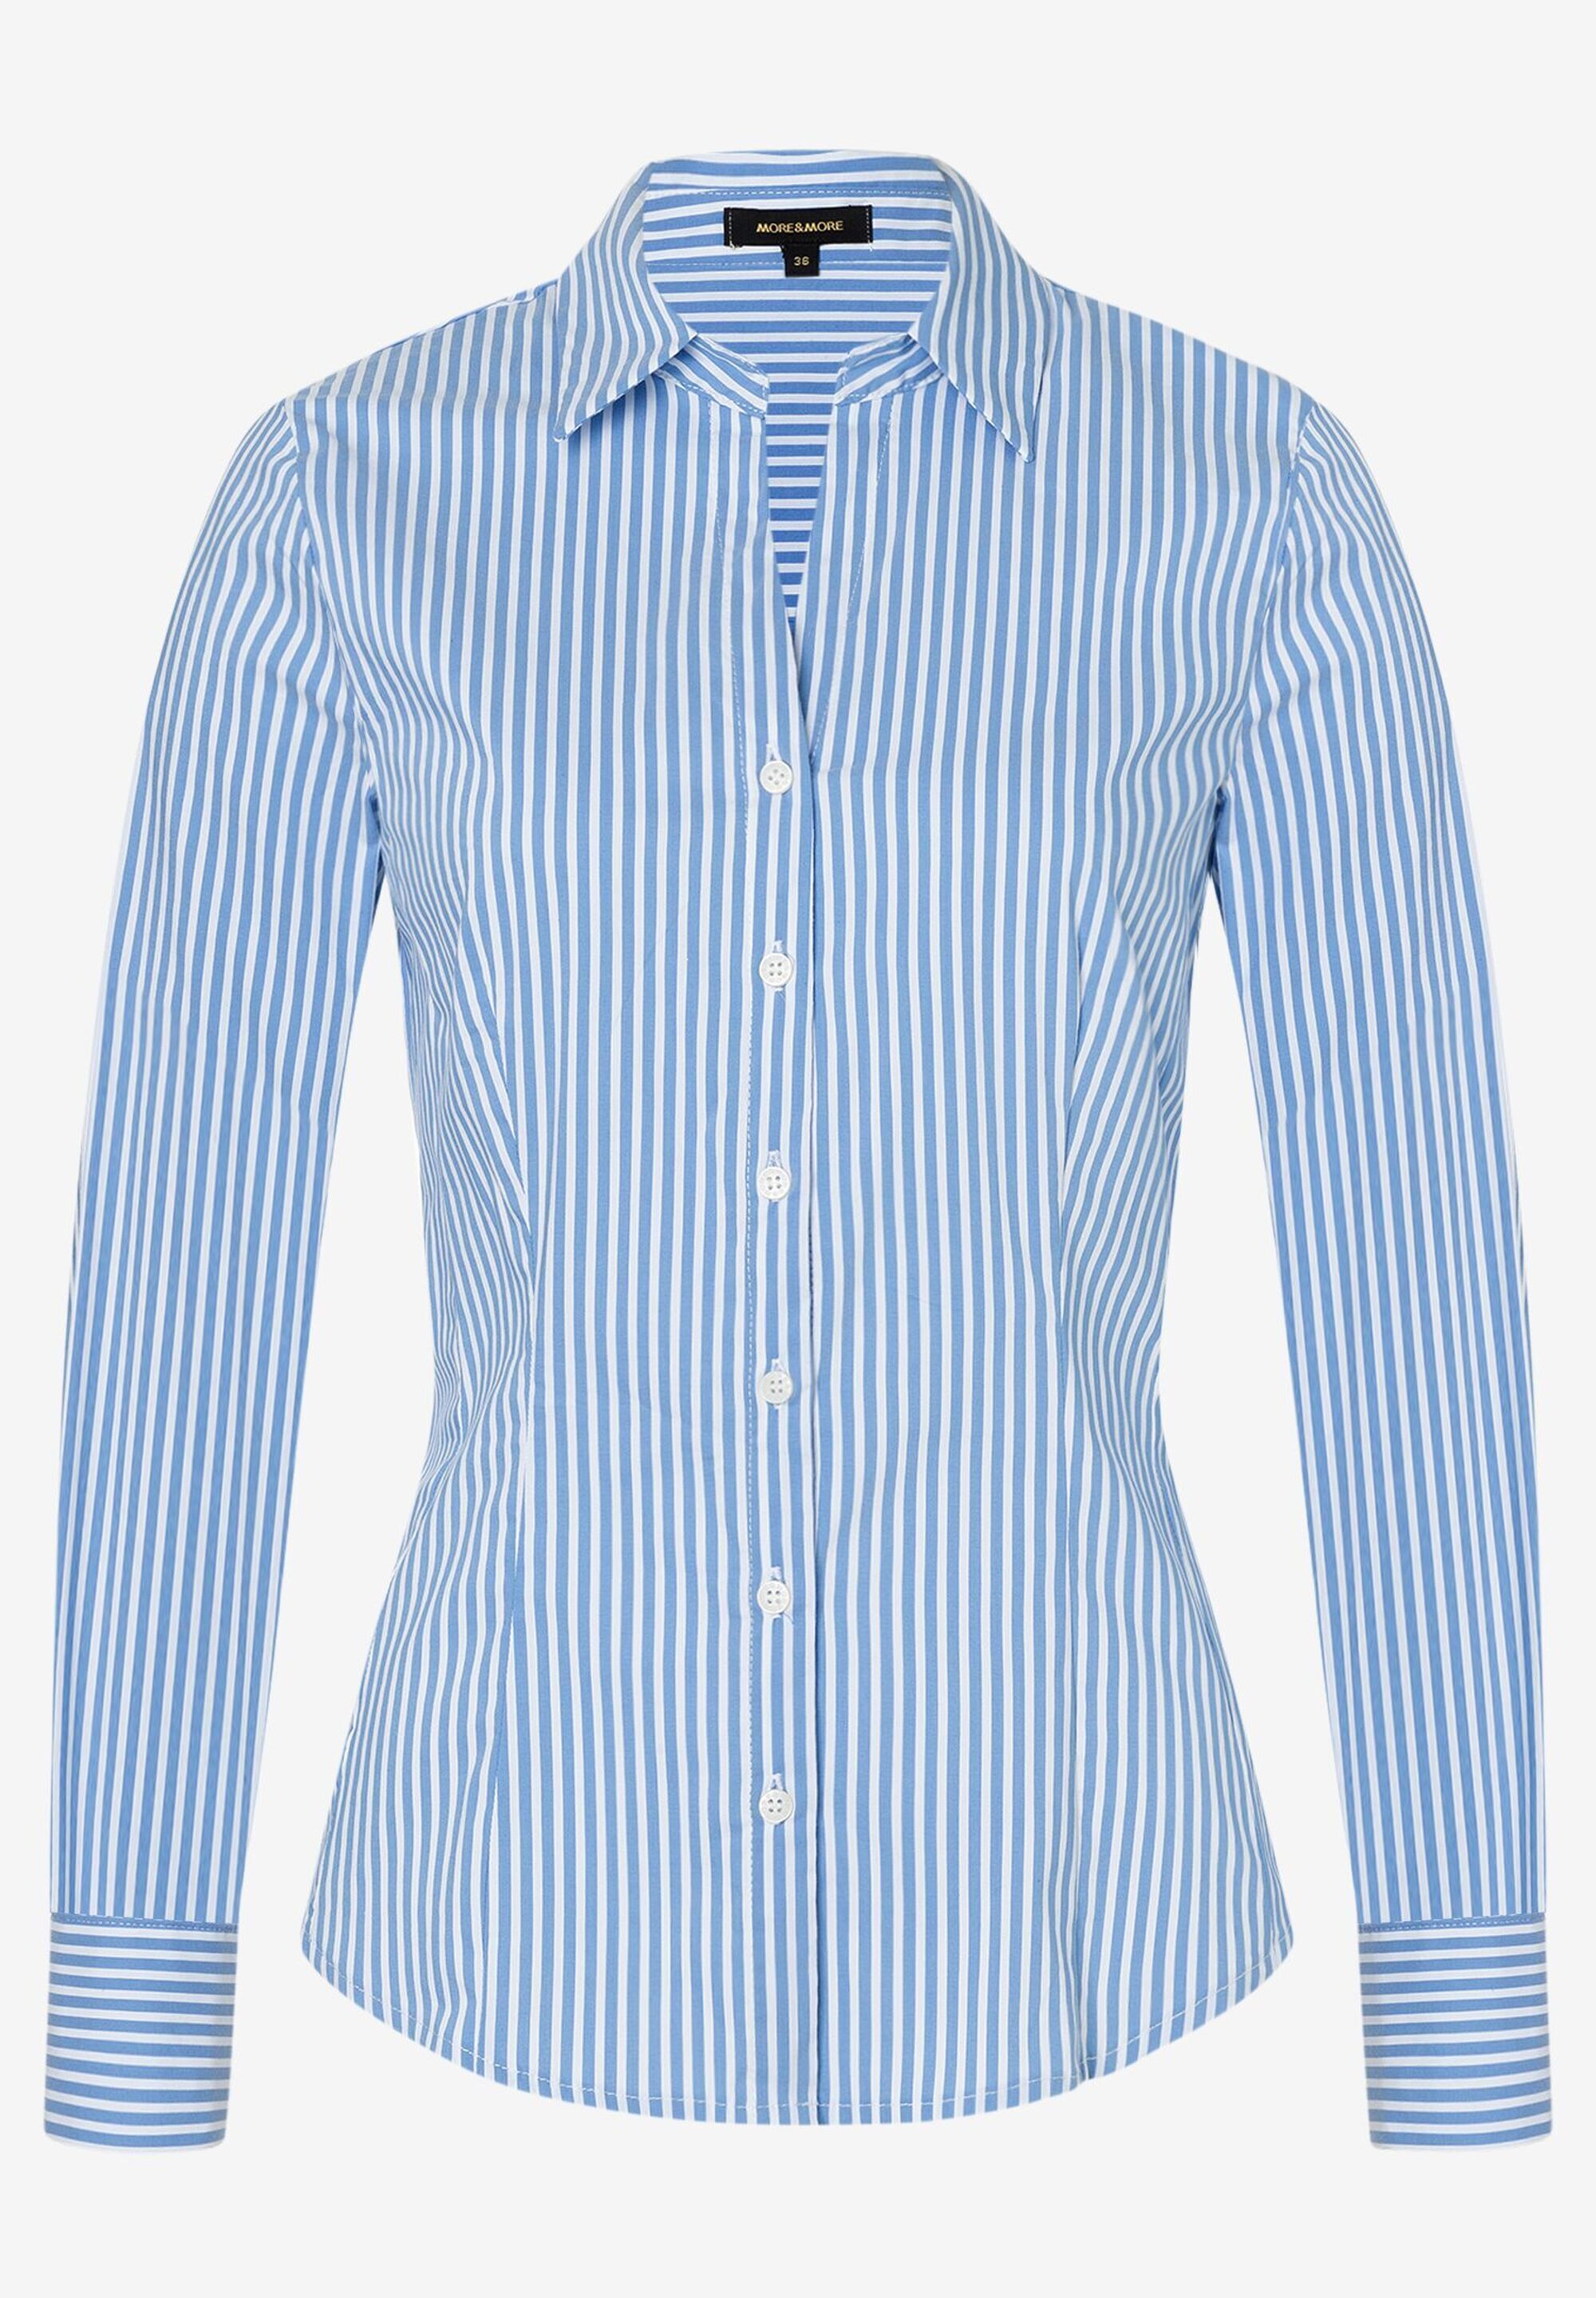 Hemdbluse mit Streifen, blau/weiß, Frühjahrs-Kollektion | Der offizielle  MORE & MORE Onlineshop